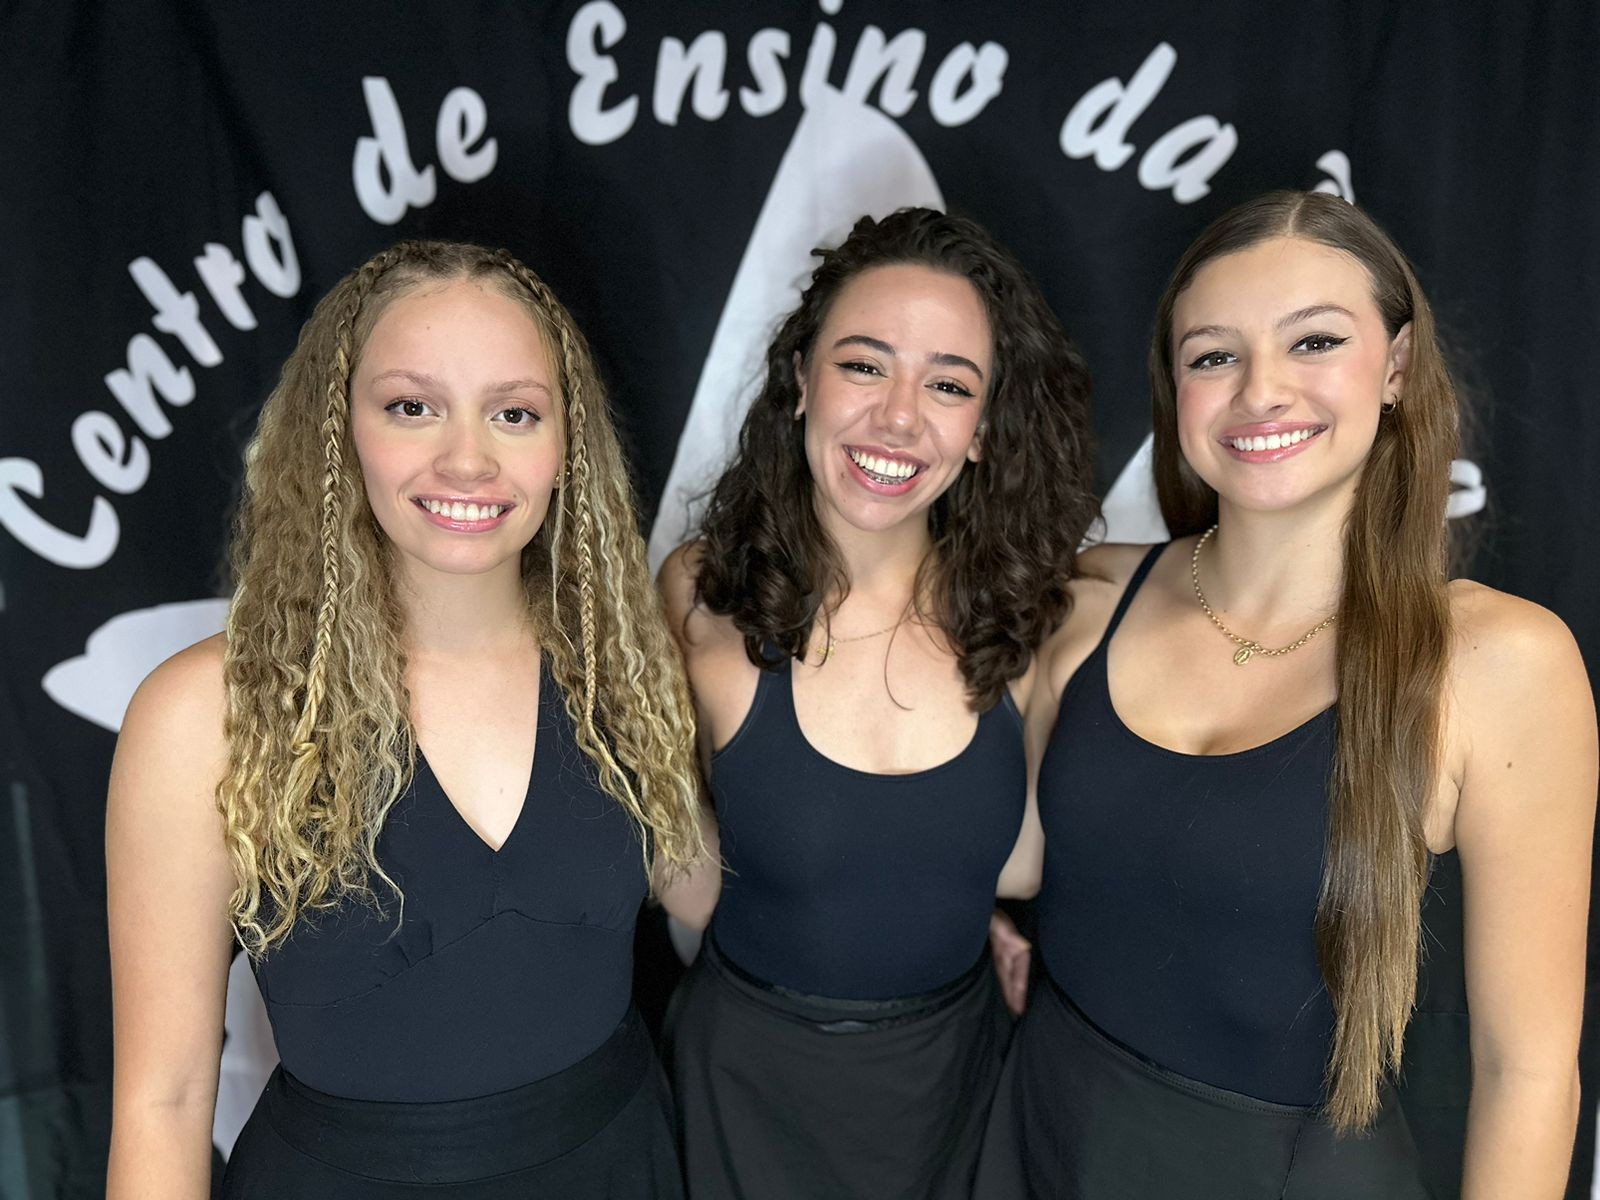 Bailarinas de projeto social ganham bolsa de estudos na Itália e buscam recursos para viagem: 'Sonho possível'